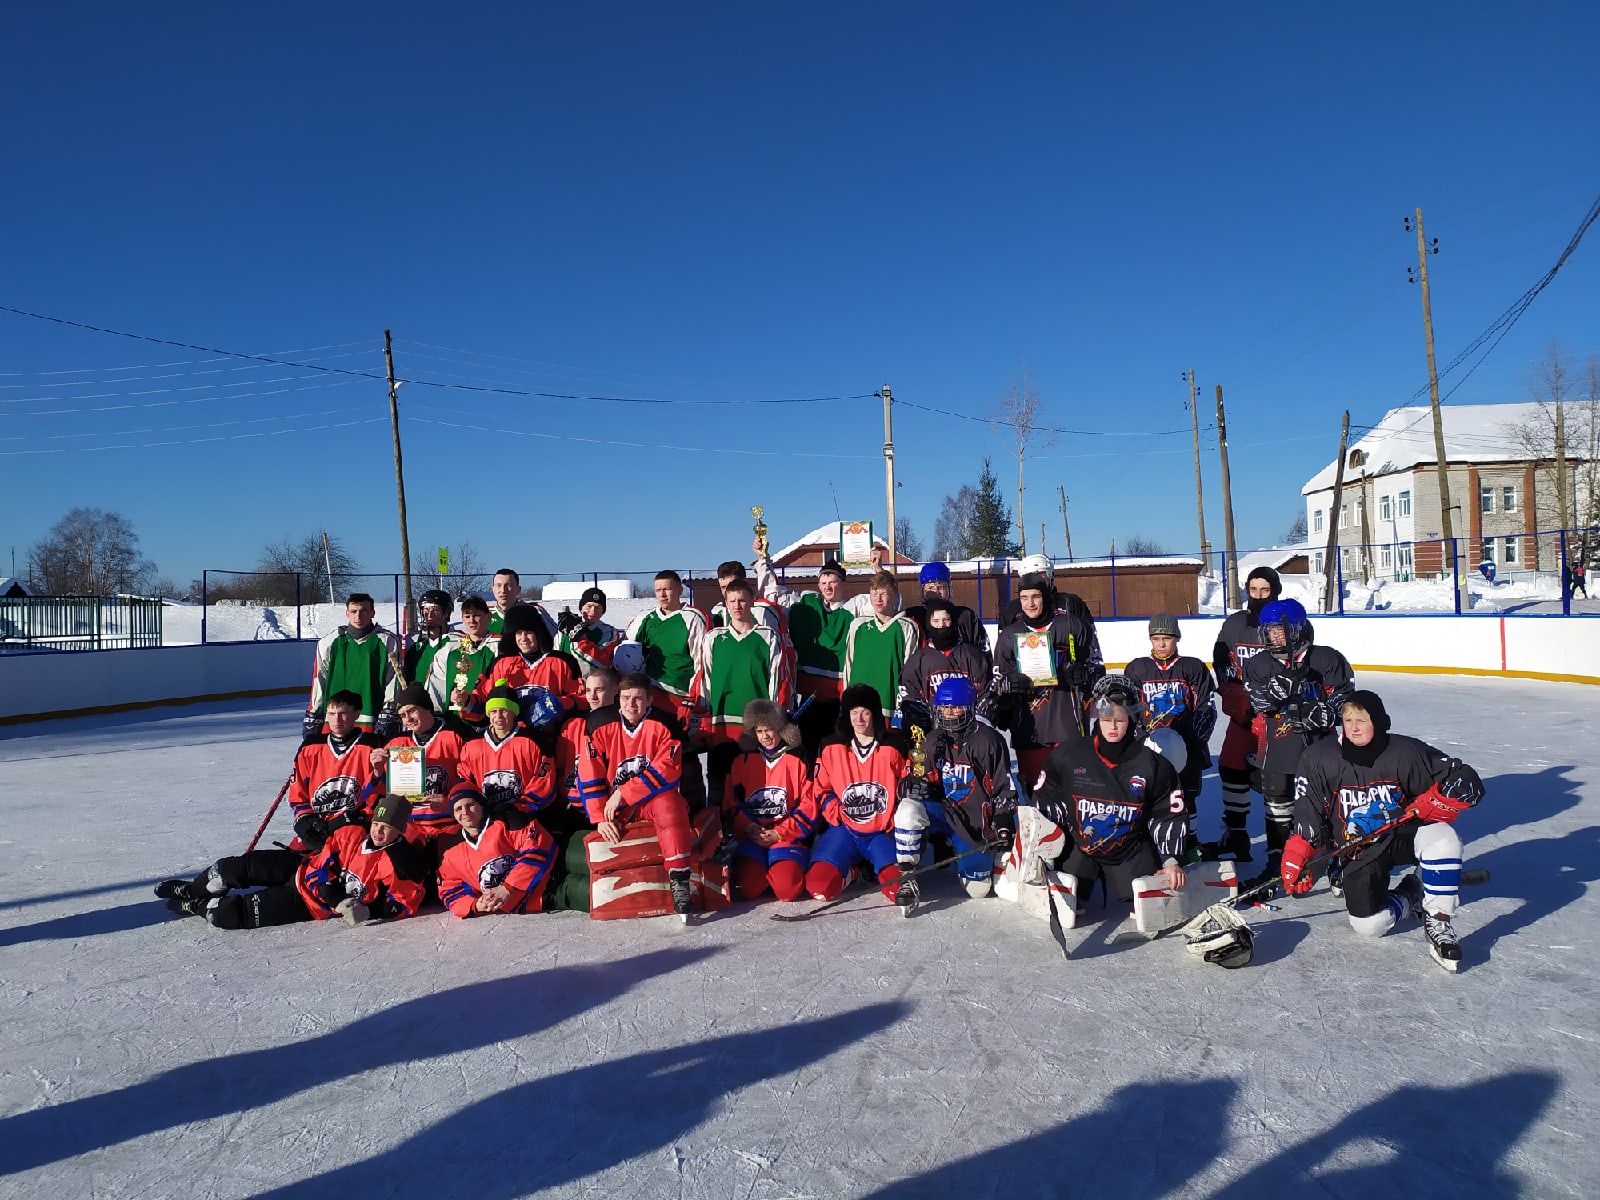 27 февраля, в п. Тюлькино,прошёл межрайонный турнир по хоккею среди поселковых команд Пермского края и закрытие хоккейного сезона 2020-2021.